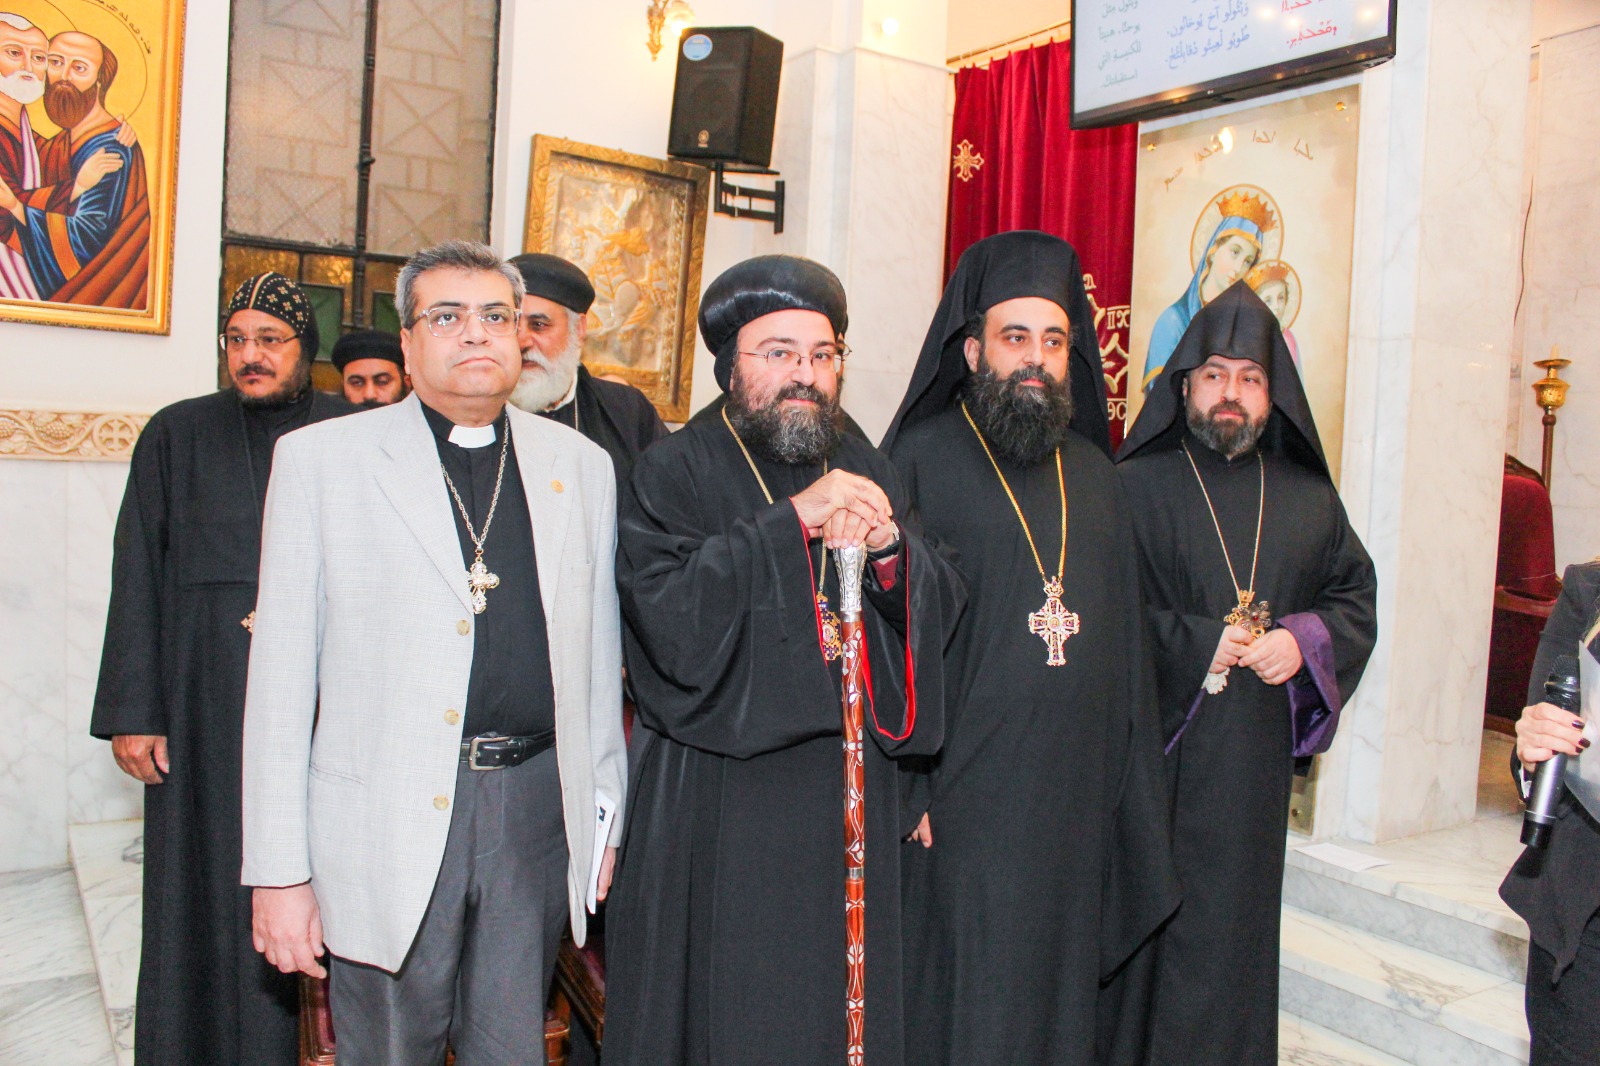 الكنيسة السريانية الأرثوذكسية في مصر تستضيف اليوم الرابع من أسبوع الصلاة من أجل وحدة المسيحيين لأول مرة​